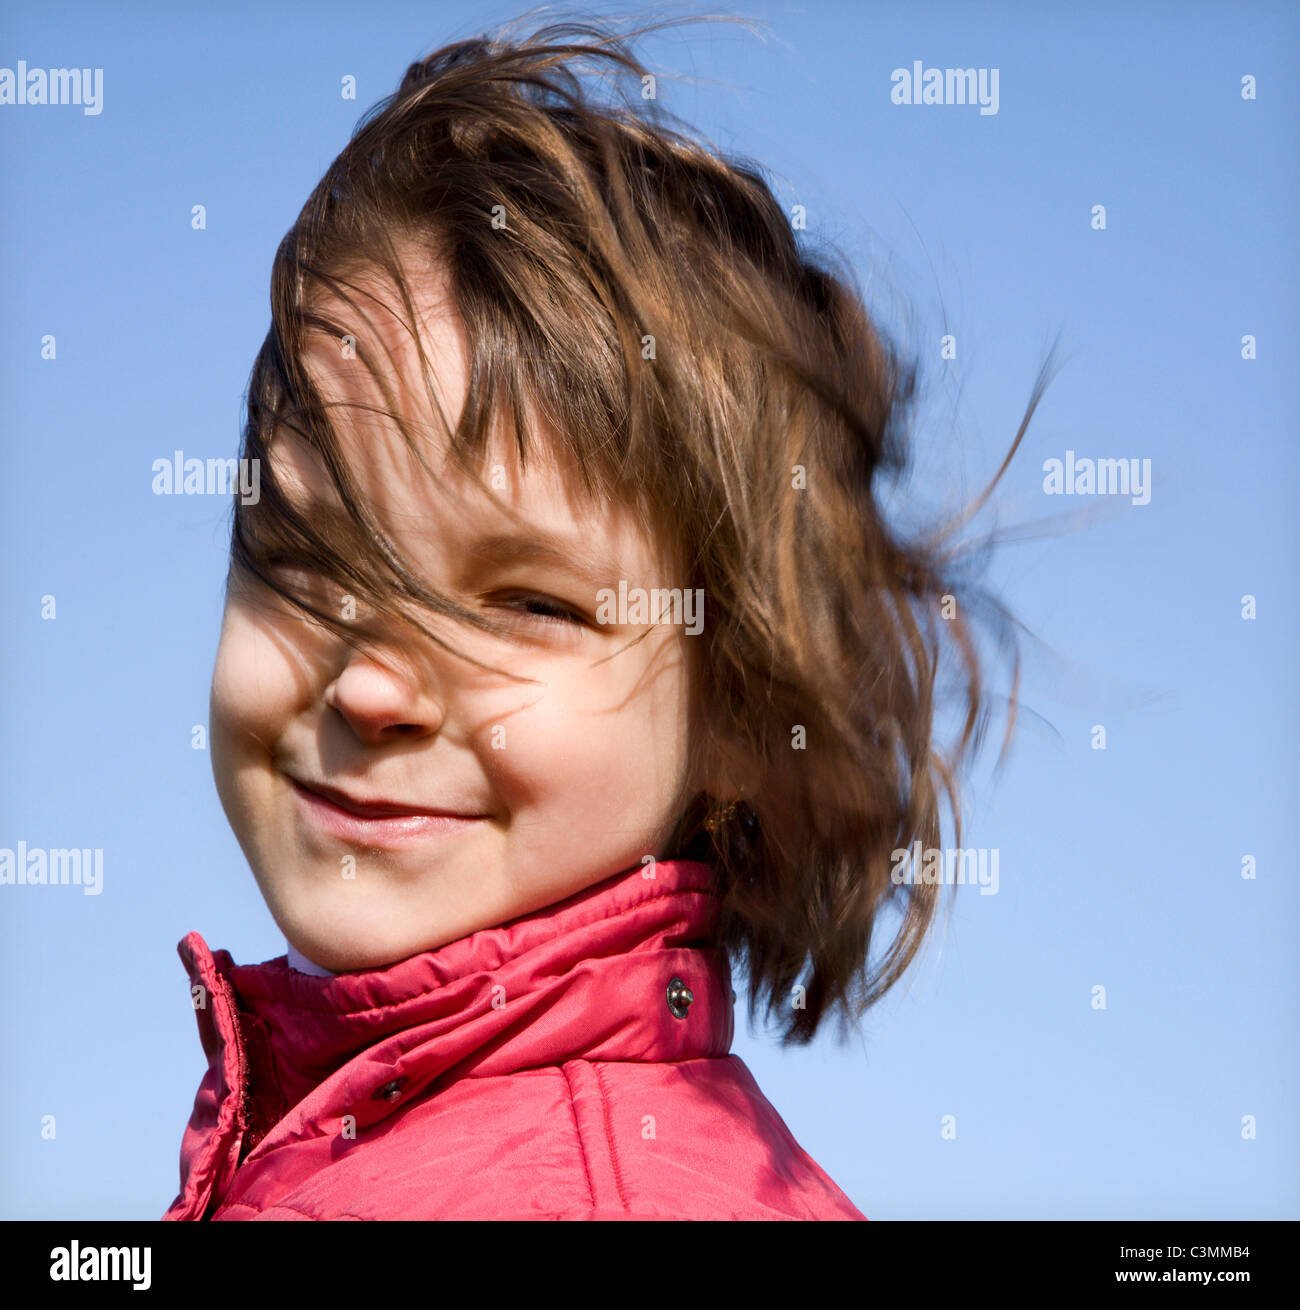 Ritratto di bambina nel vento - smile Foto stock - Alamy